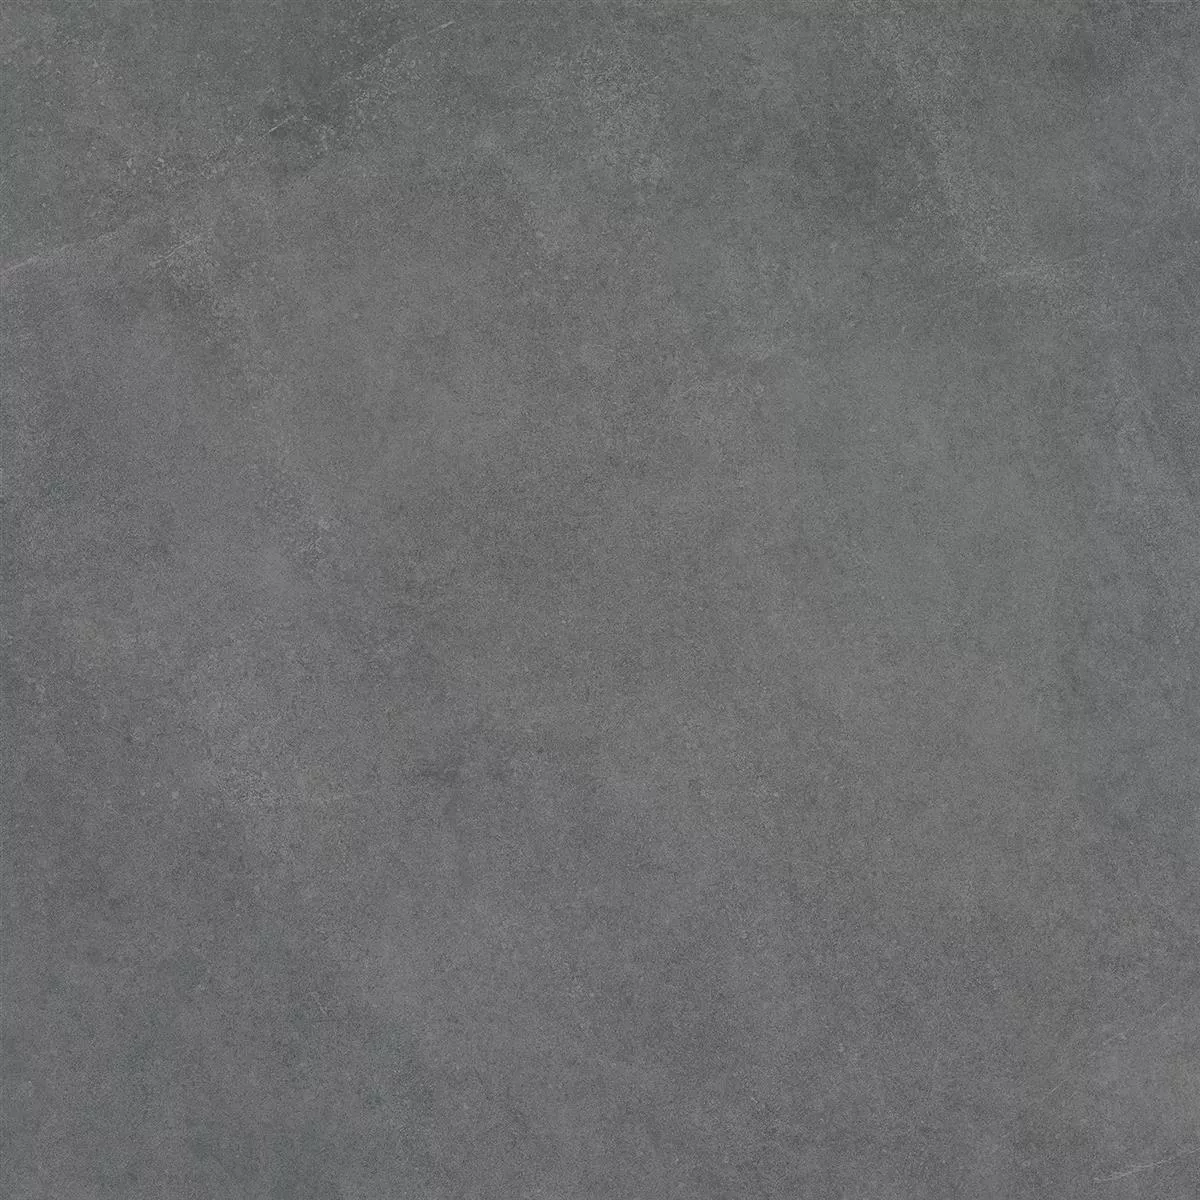 Campione Piastrella Esterni Ottica Di Cemento Newland Antracite 60x60x3cm